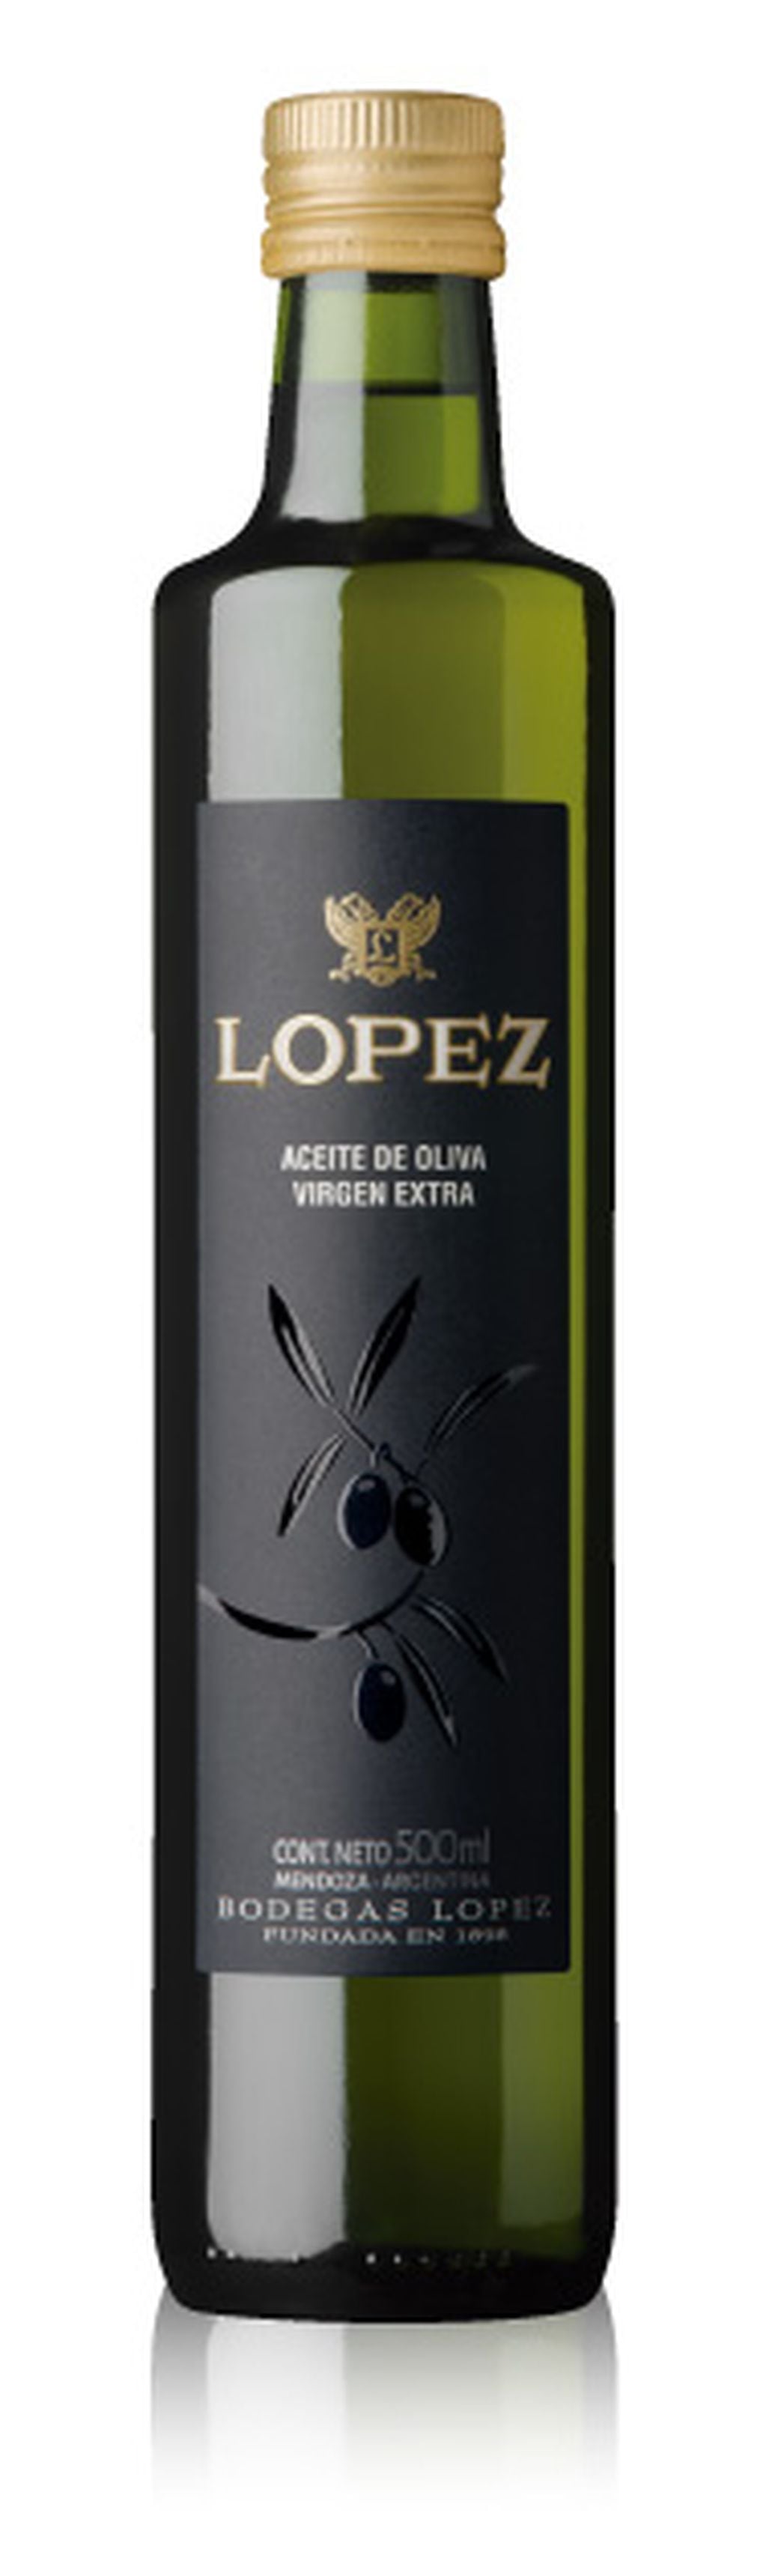 Aceite de Oliva de Bodegas López.